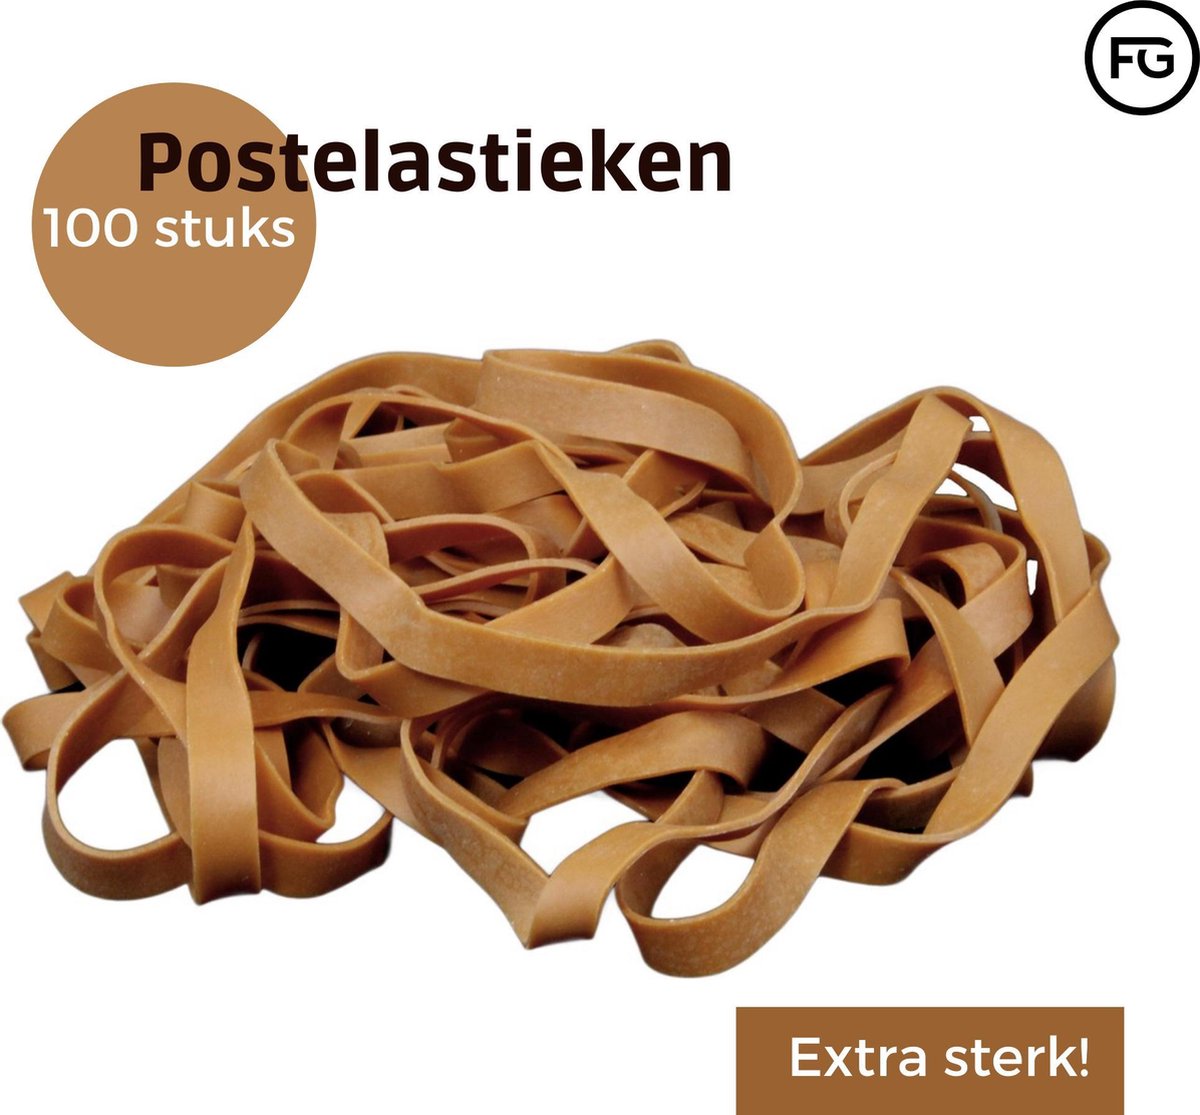 FG Post Elastieken - Postelastieken - Ca 100 stuks - Post - Te gebruiken | bol.com